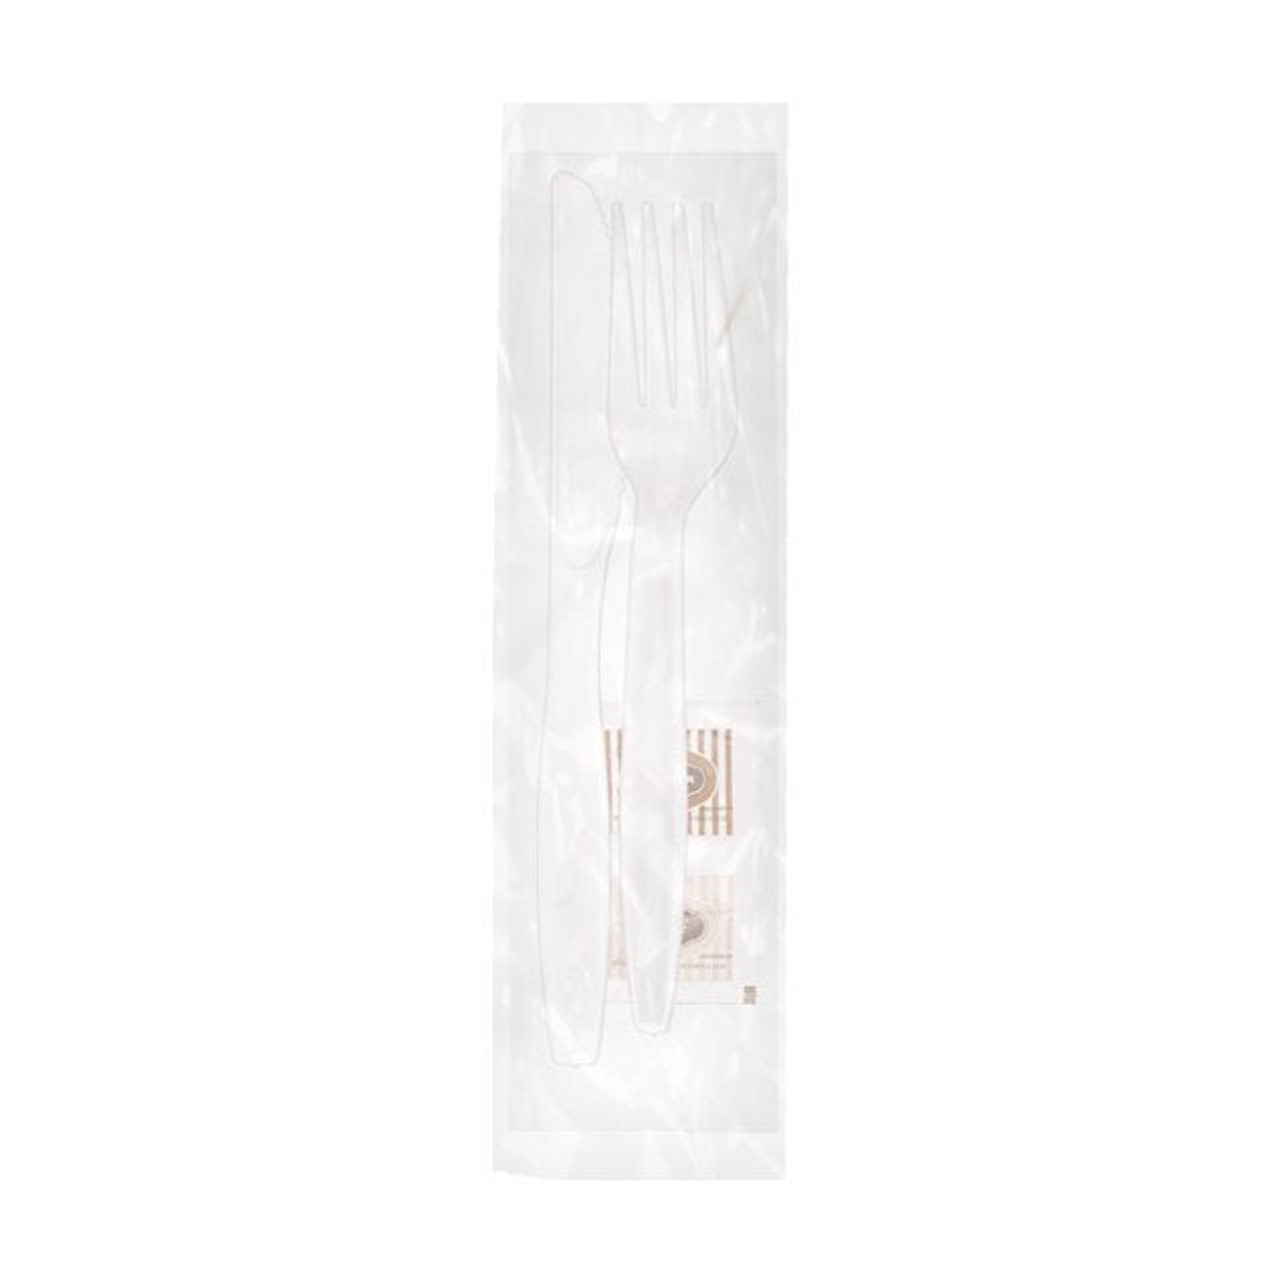 Gordon Choice White Plastic Cutlery Kits, 5 Piece, Fork, Knife, Napkin, Salt, Pepper | 500UN/Unit, 1 Unit/Case